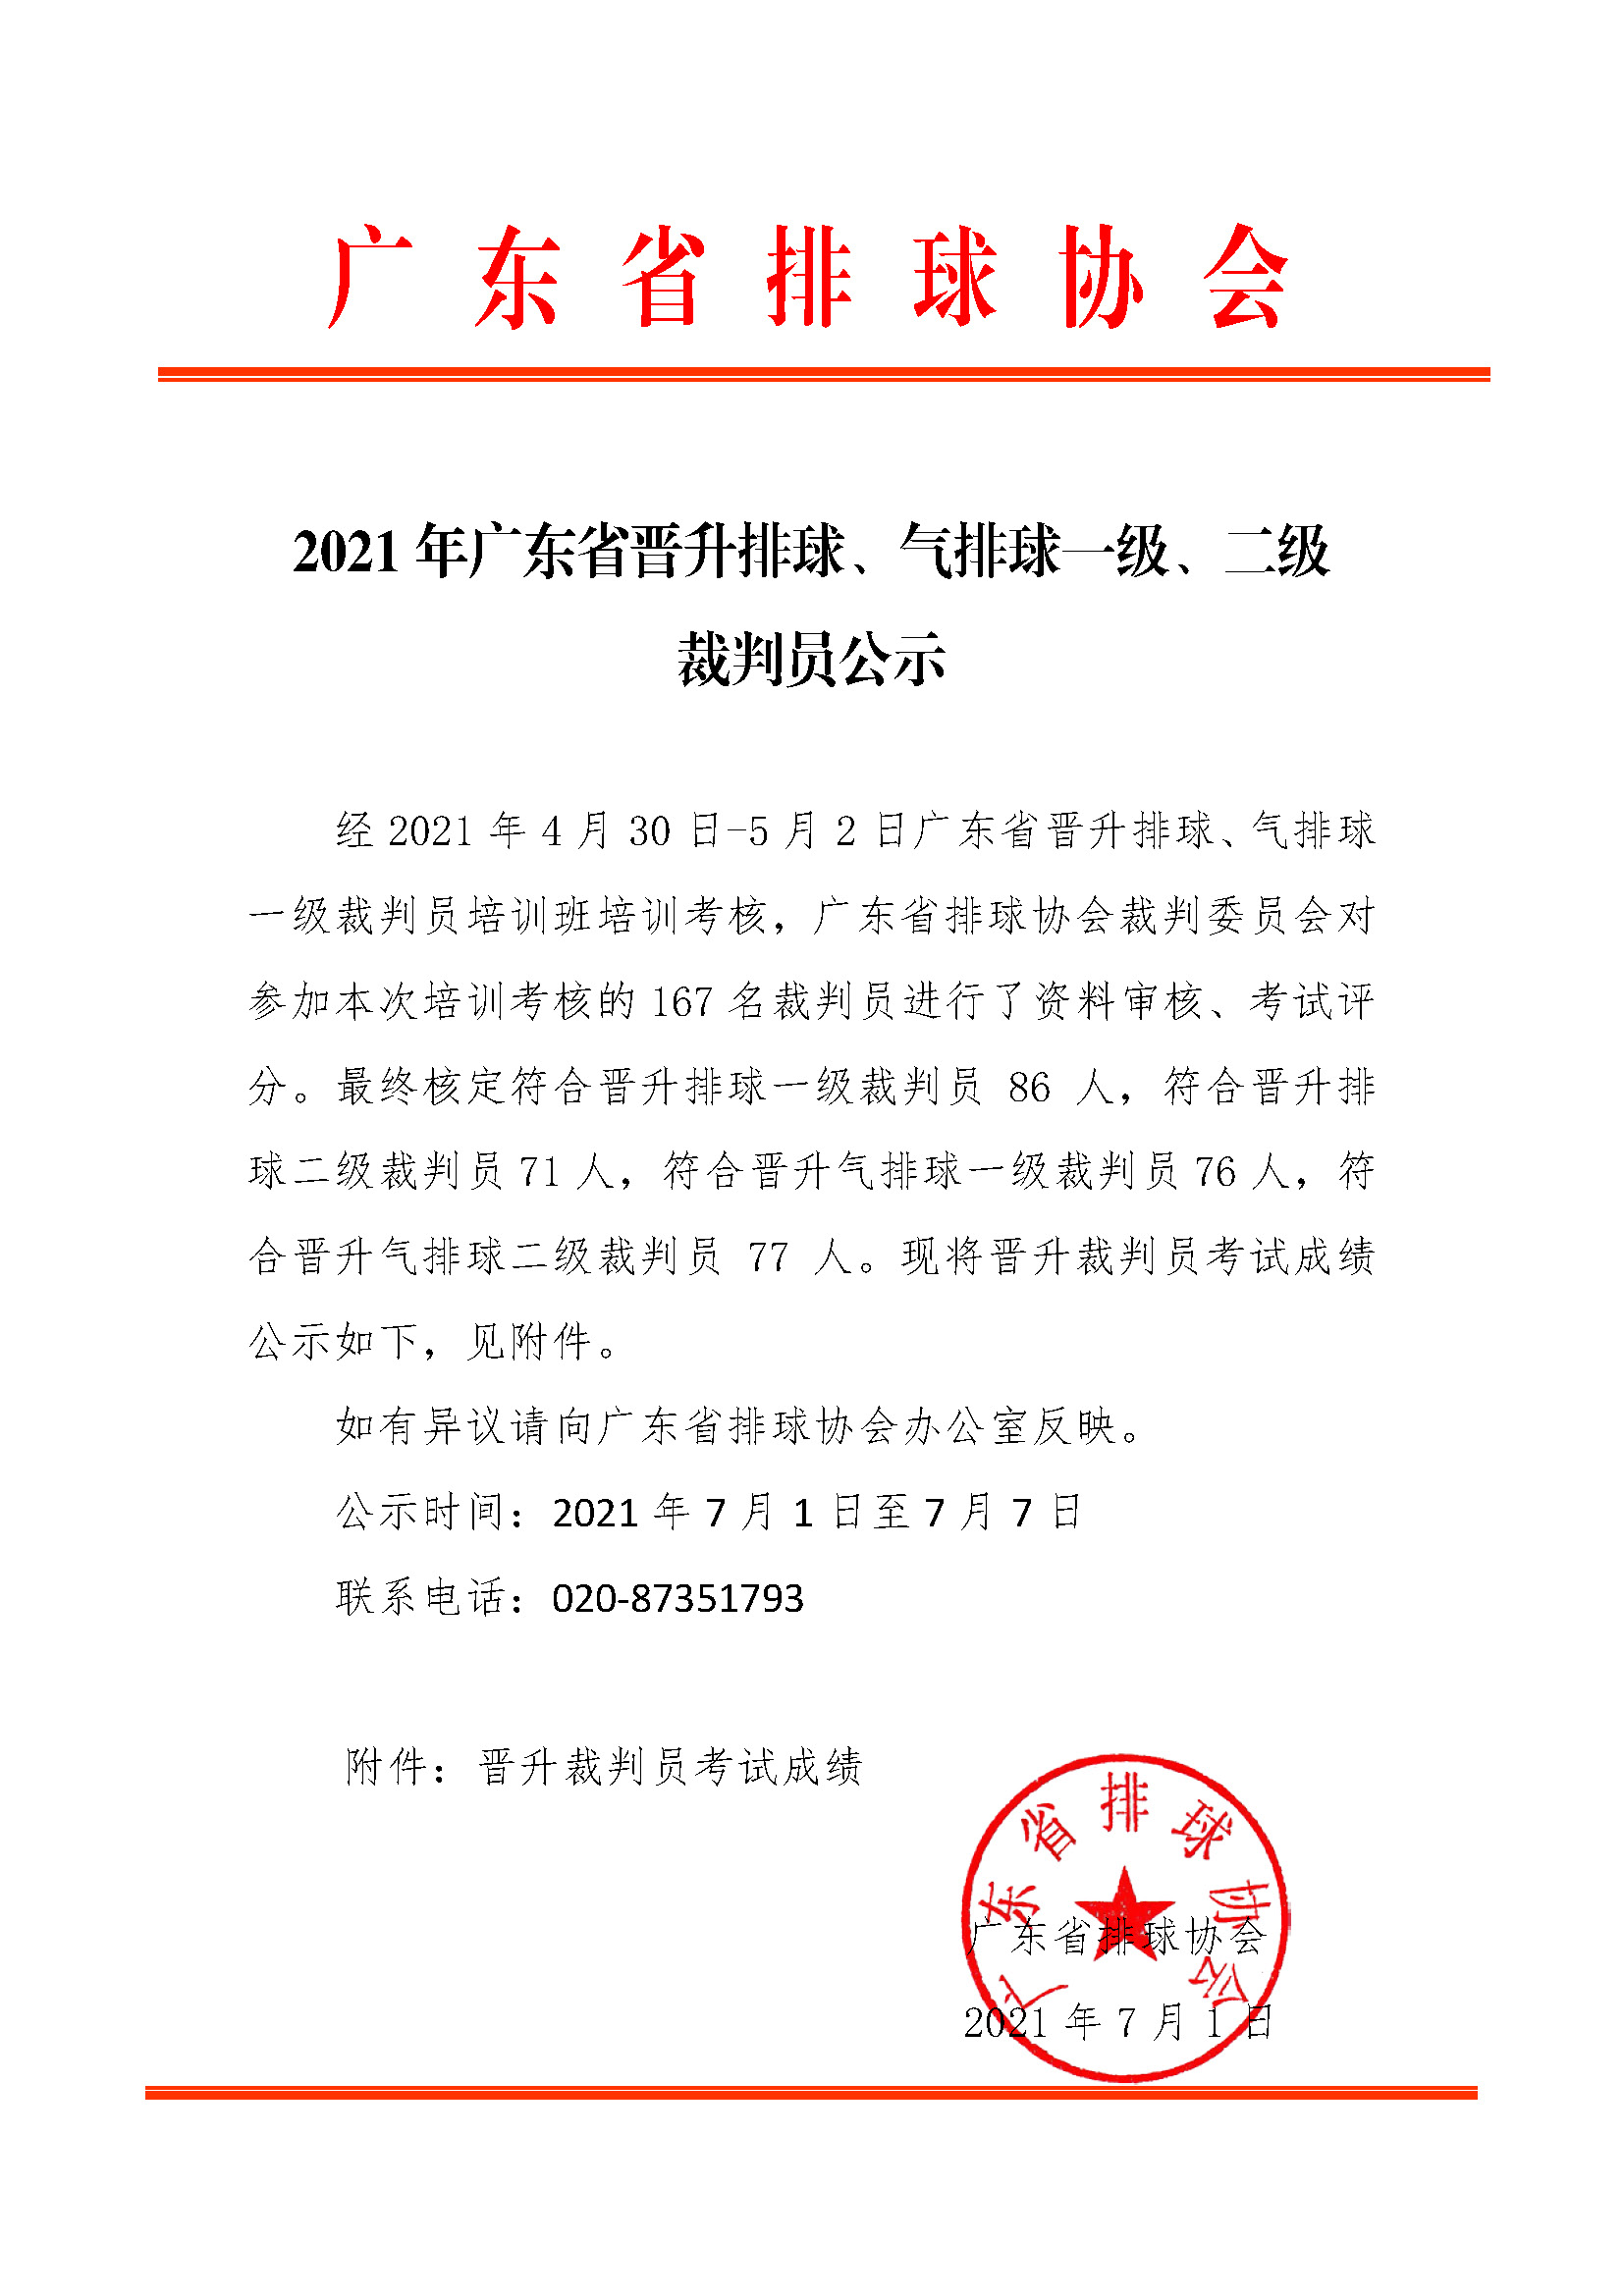 2021年广东省晋升排球、气排球一级、二级裁判员公示.jpg